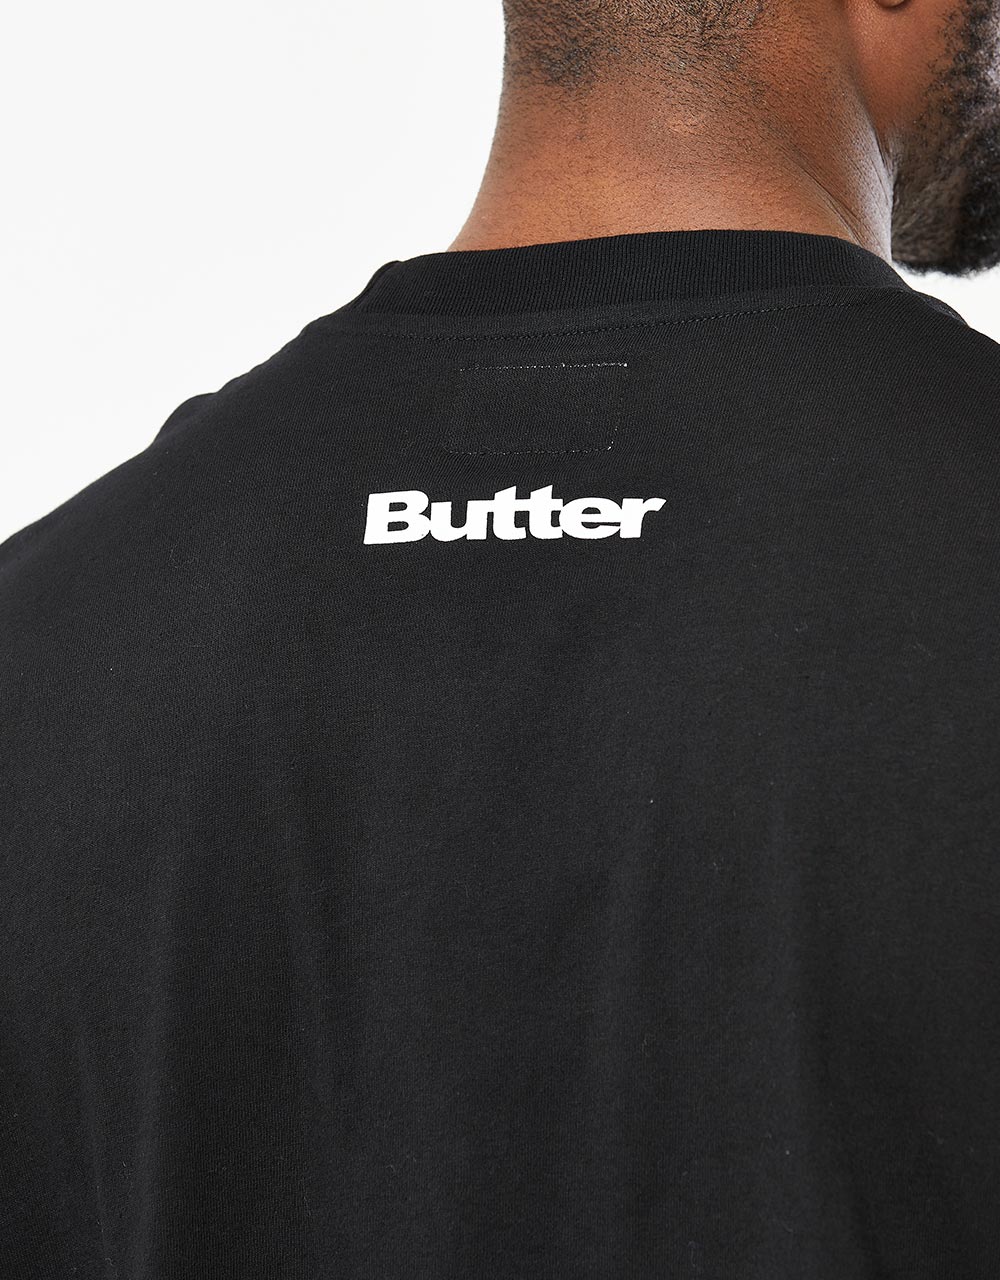 Butter Goods x Disney Fantasia T-Shirt - Black